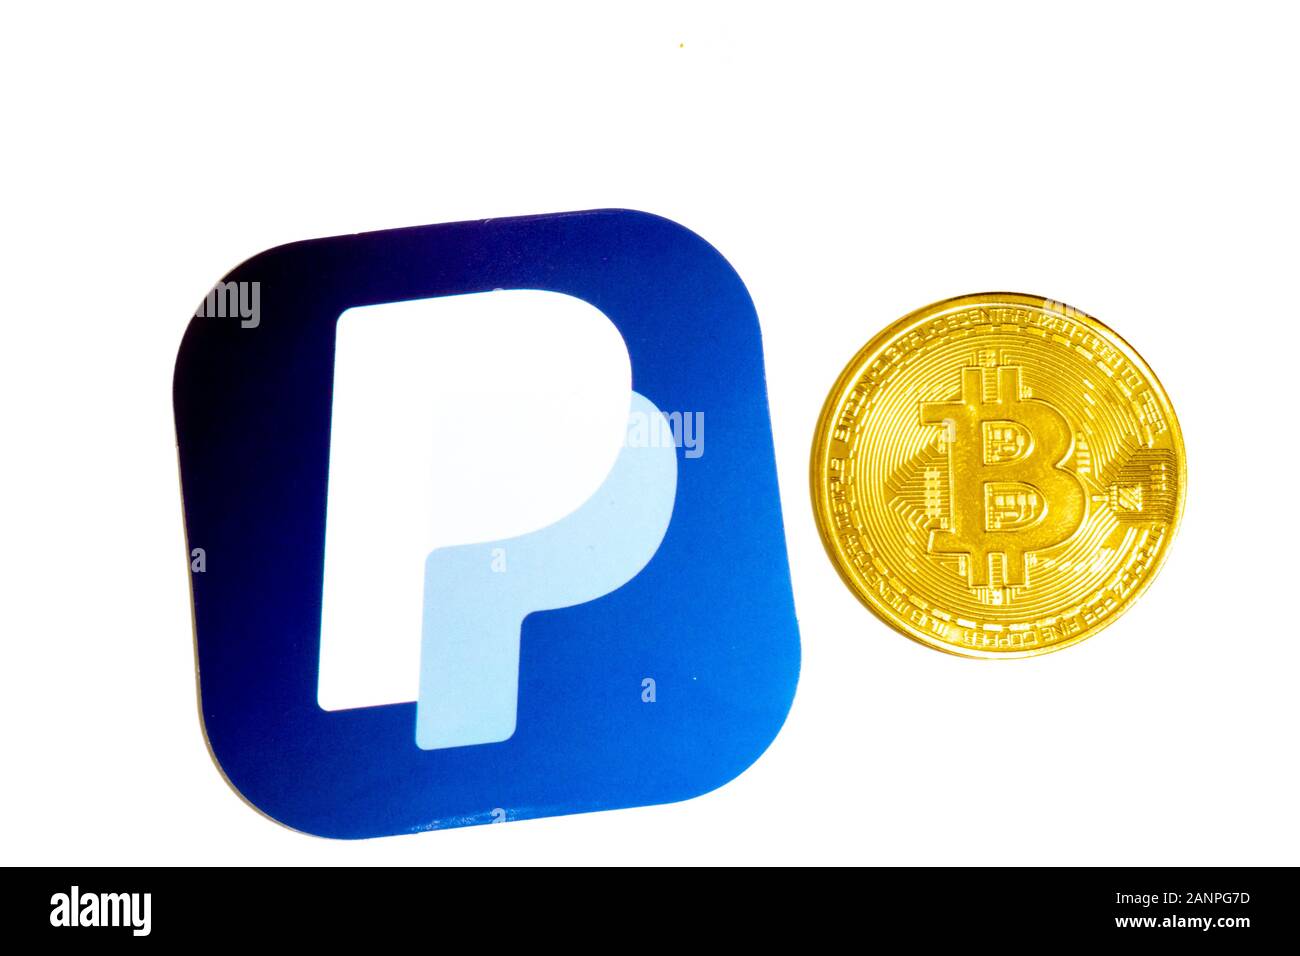 Los Angeles, Californie, États-Unis - 17 janvier 2020: PayPal et Bitcoin sur fond blanc, éditorial illustratif Banque D'Images